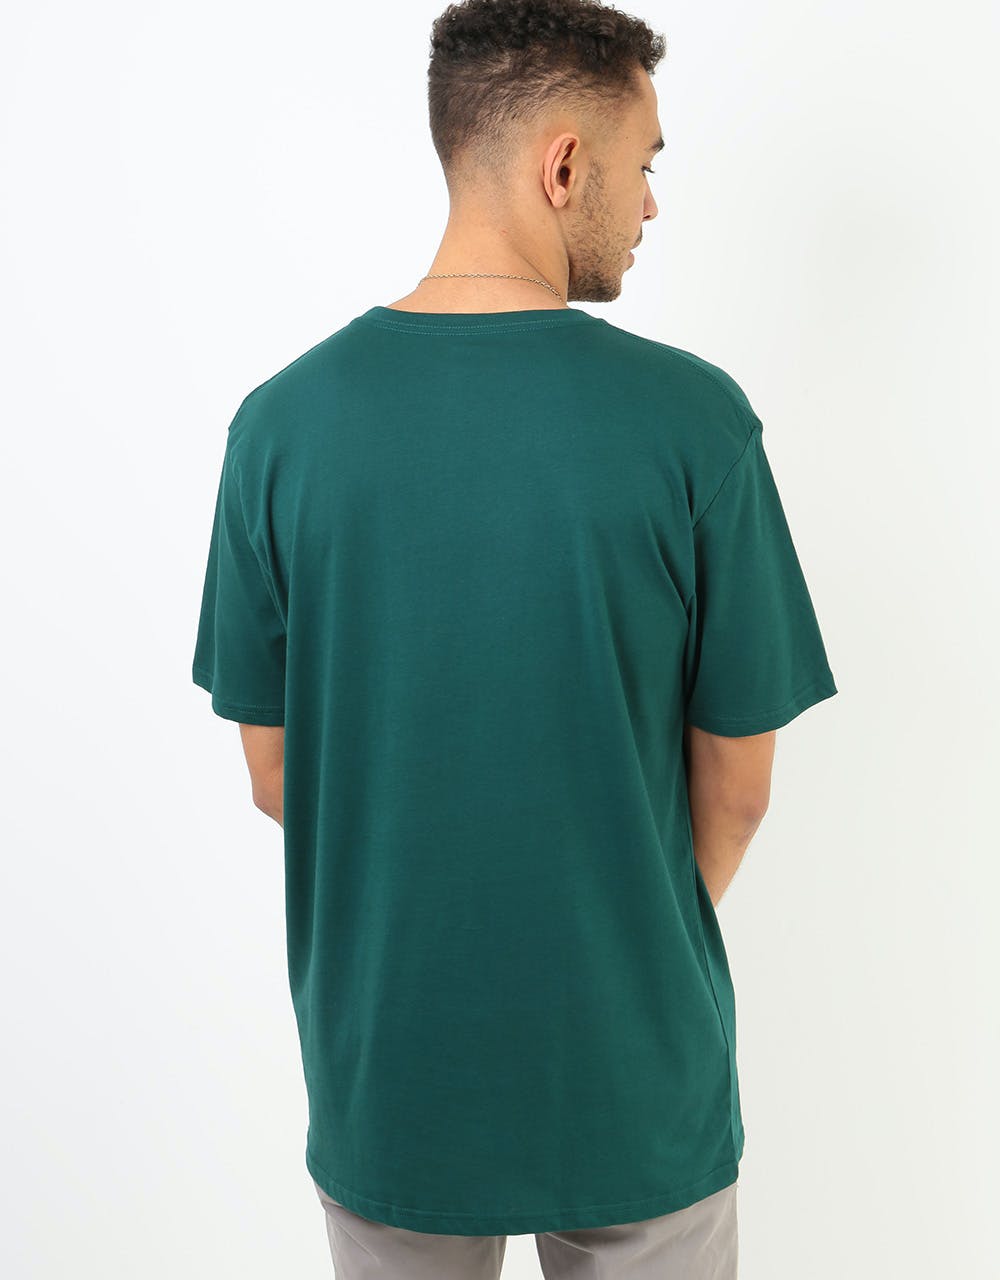 Volcom Crisp Stone Basic T-Shirt - Evergreen